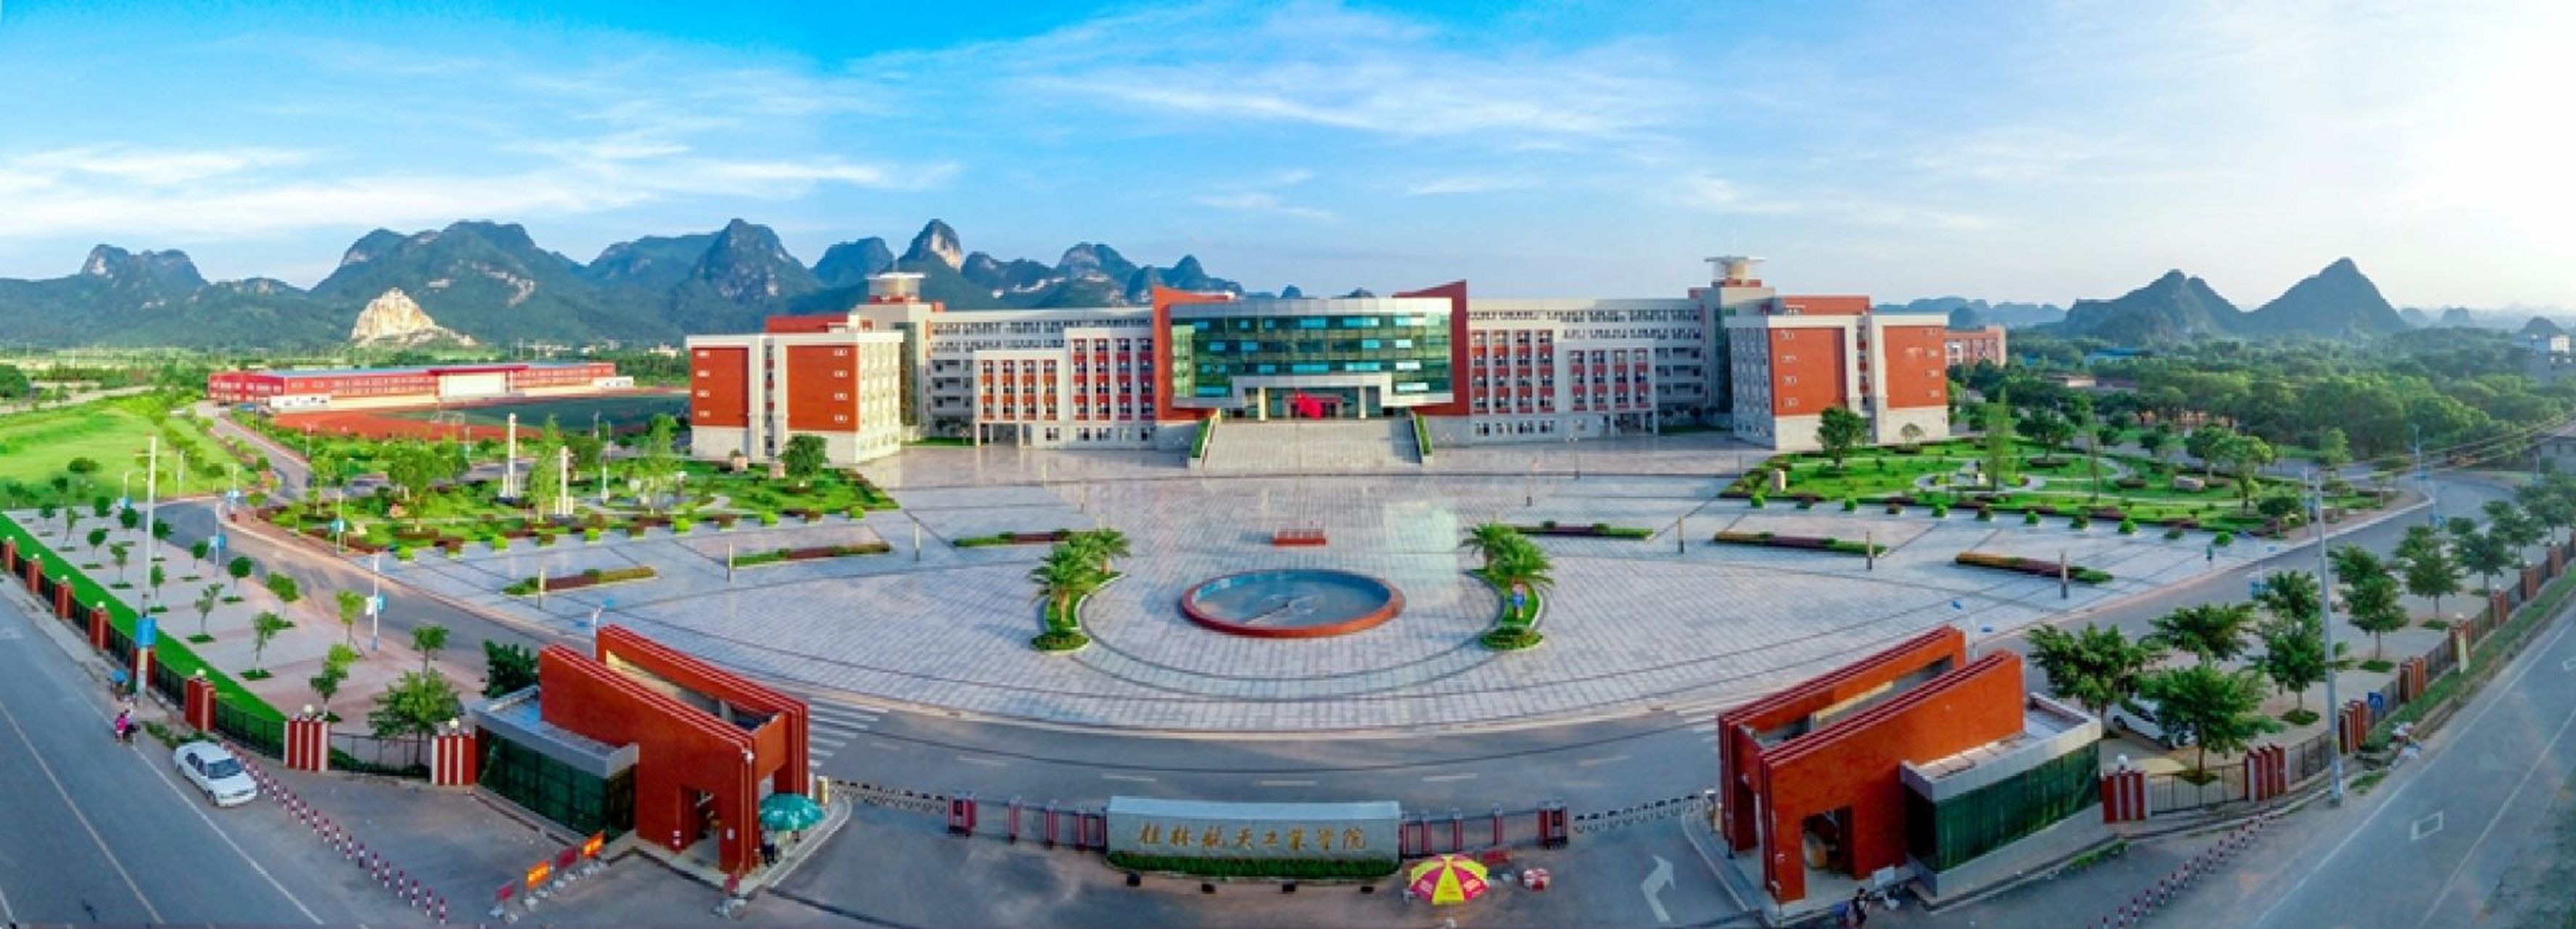 桂林航空学院图片